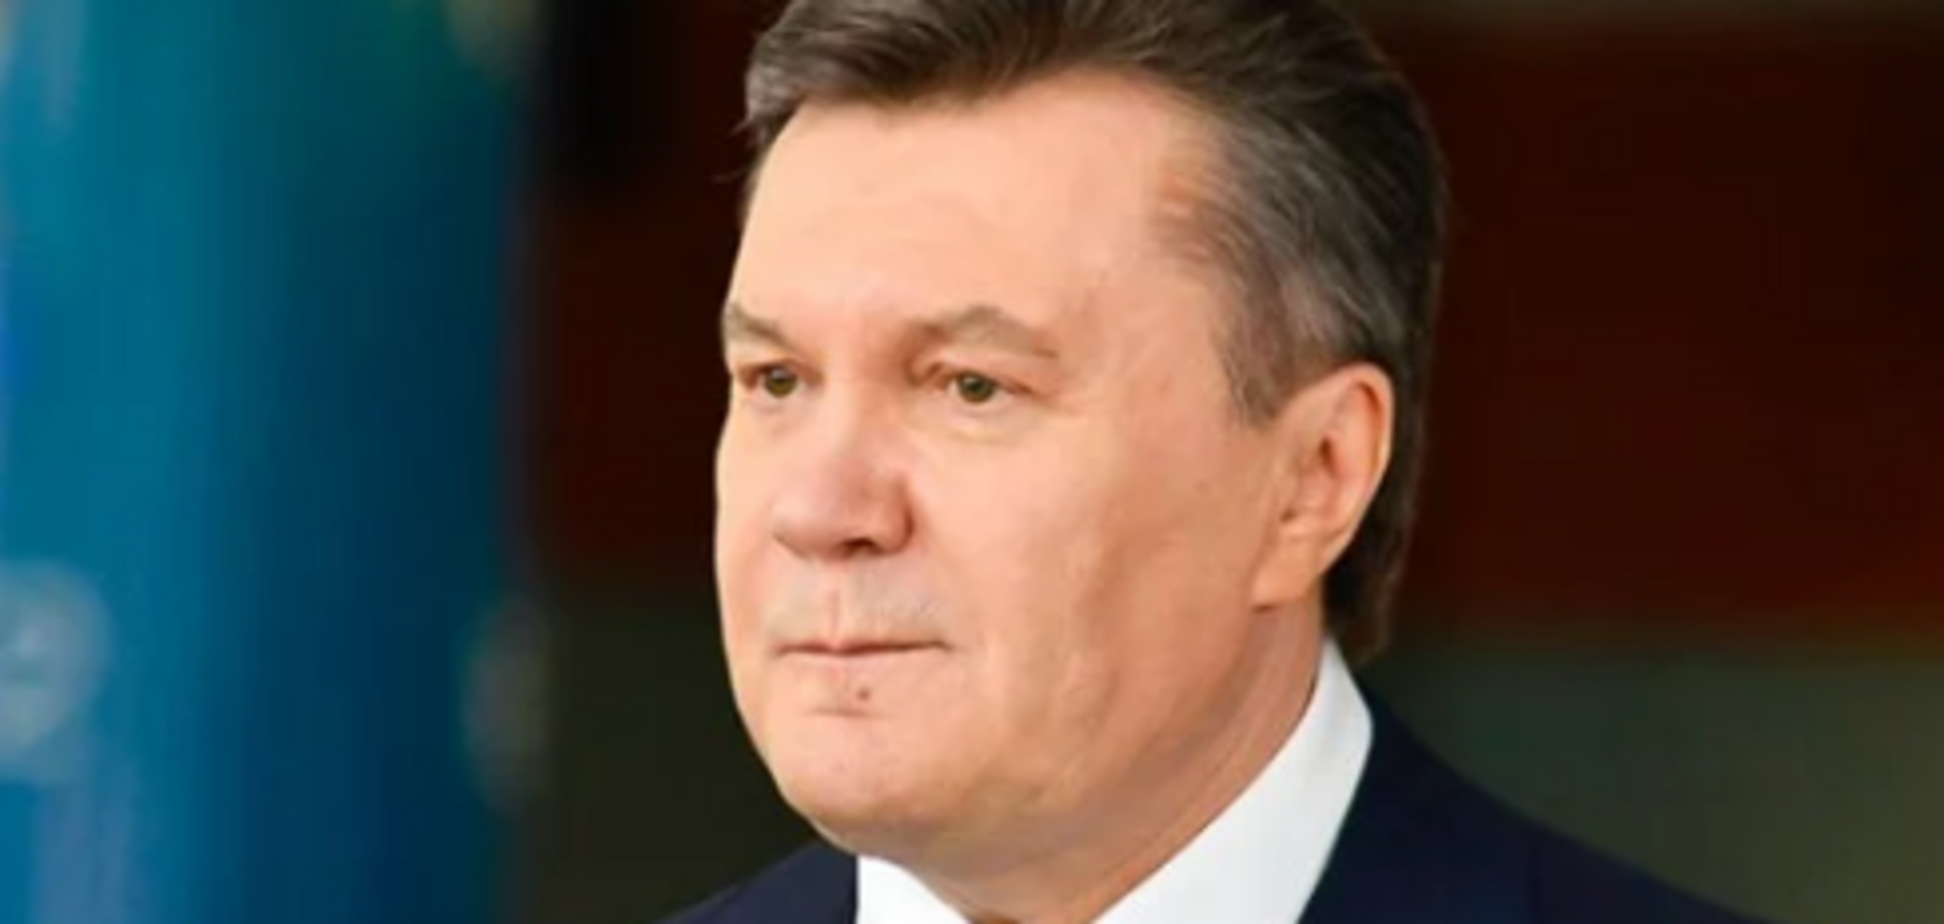 Спортивная травма как диагноз: почему на самом деле Янукович попал в больницу